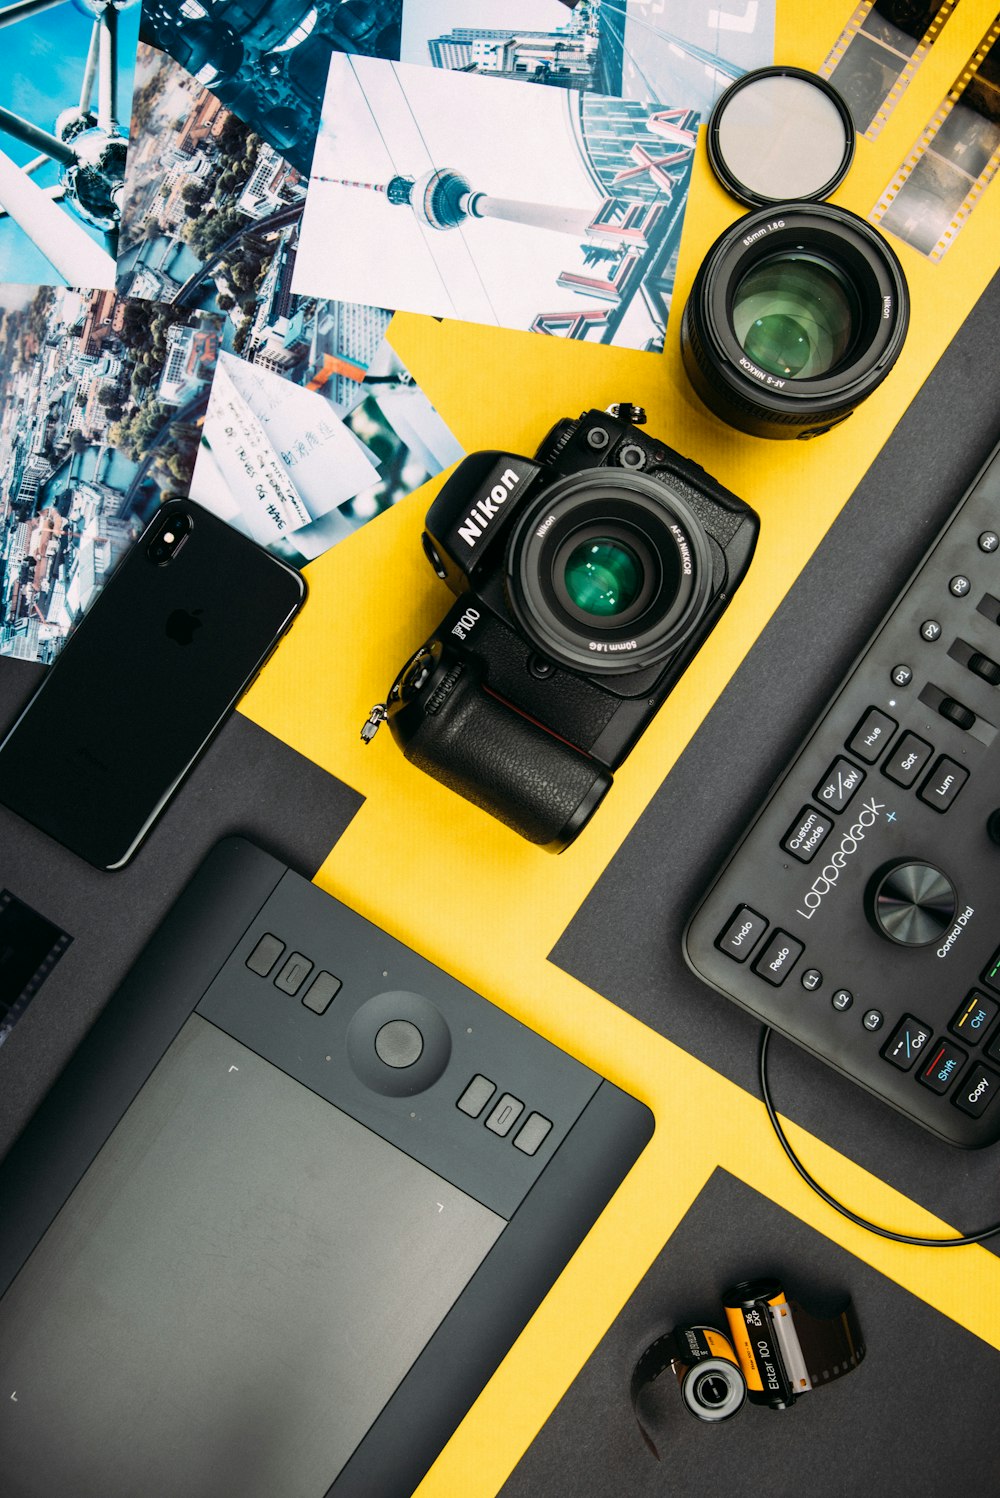 fotocamera reflex digitale Nikon nera accanto all'iPhone X grigio siderale